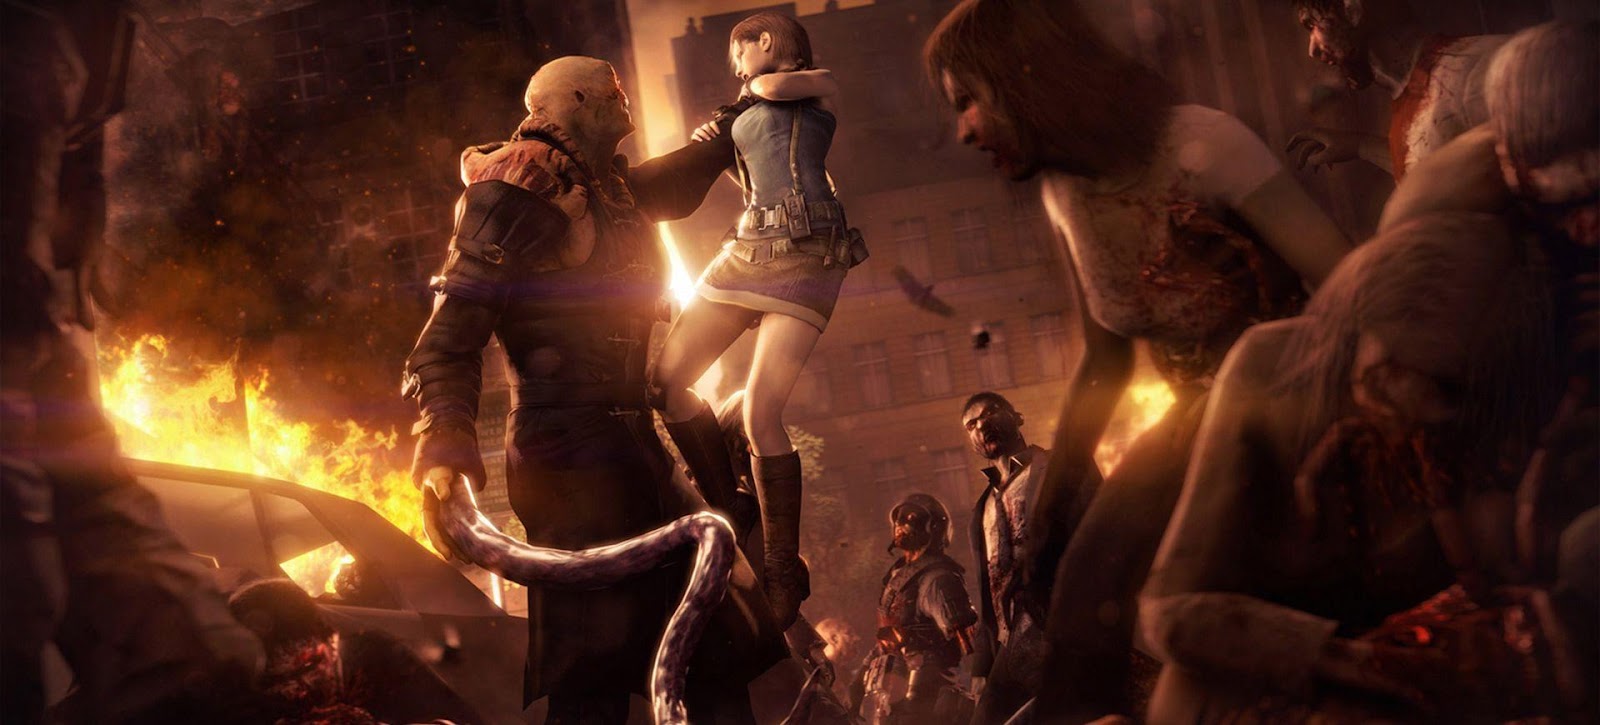 5 điều game thủ mong muốn ở Resident Evil 3 Remake, game kinh dị đáng chờ đợi nhất 2020 - Ảnh 6.